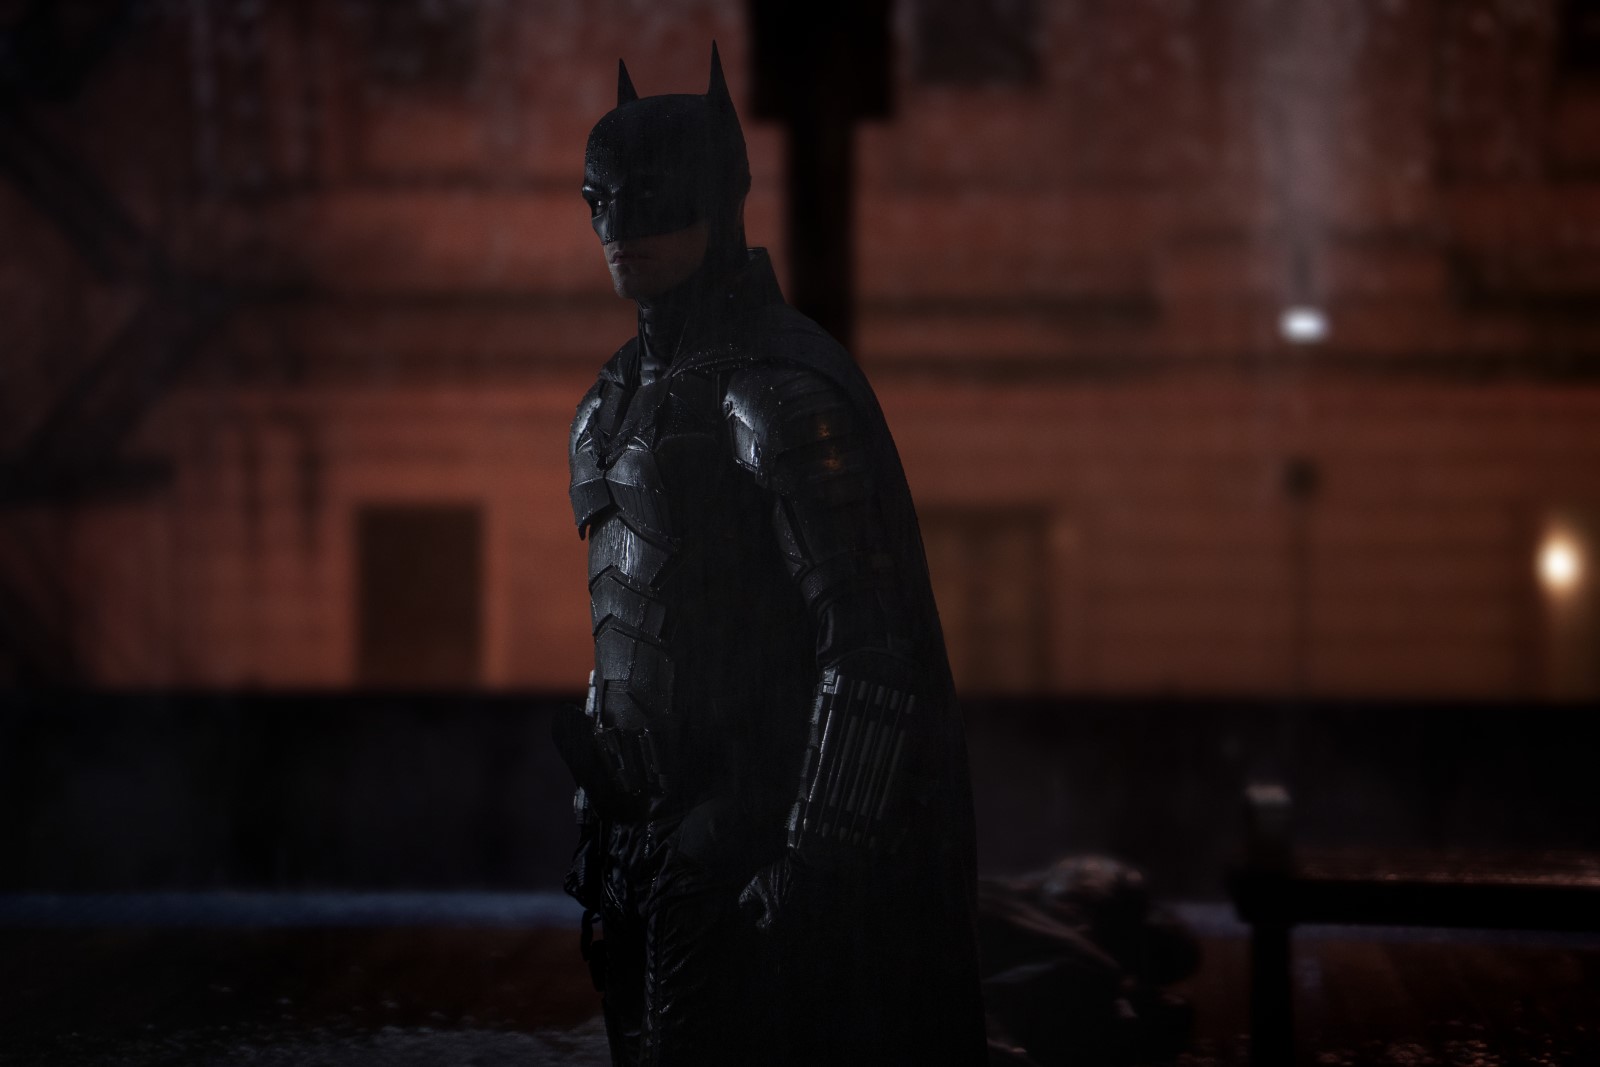 Szenenbild 4 vom Film The Batman